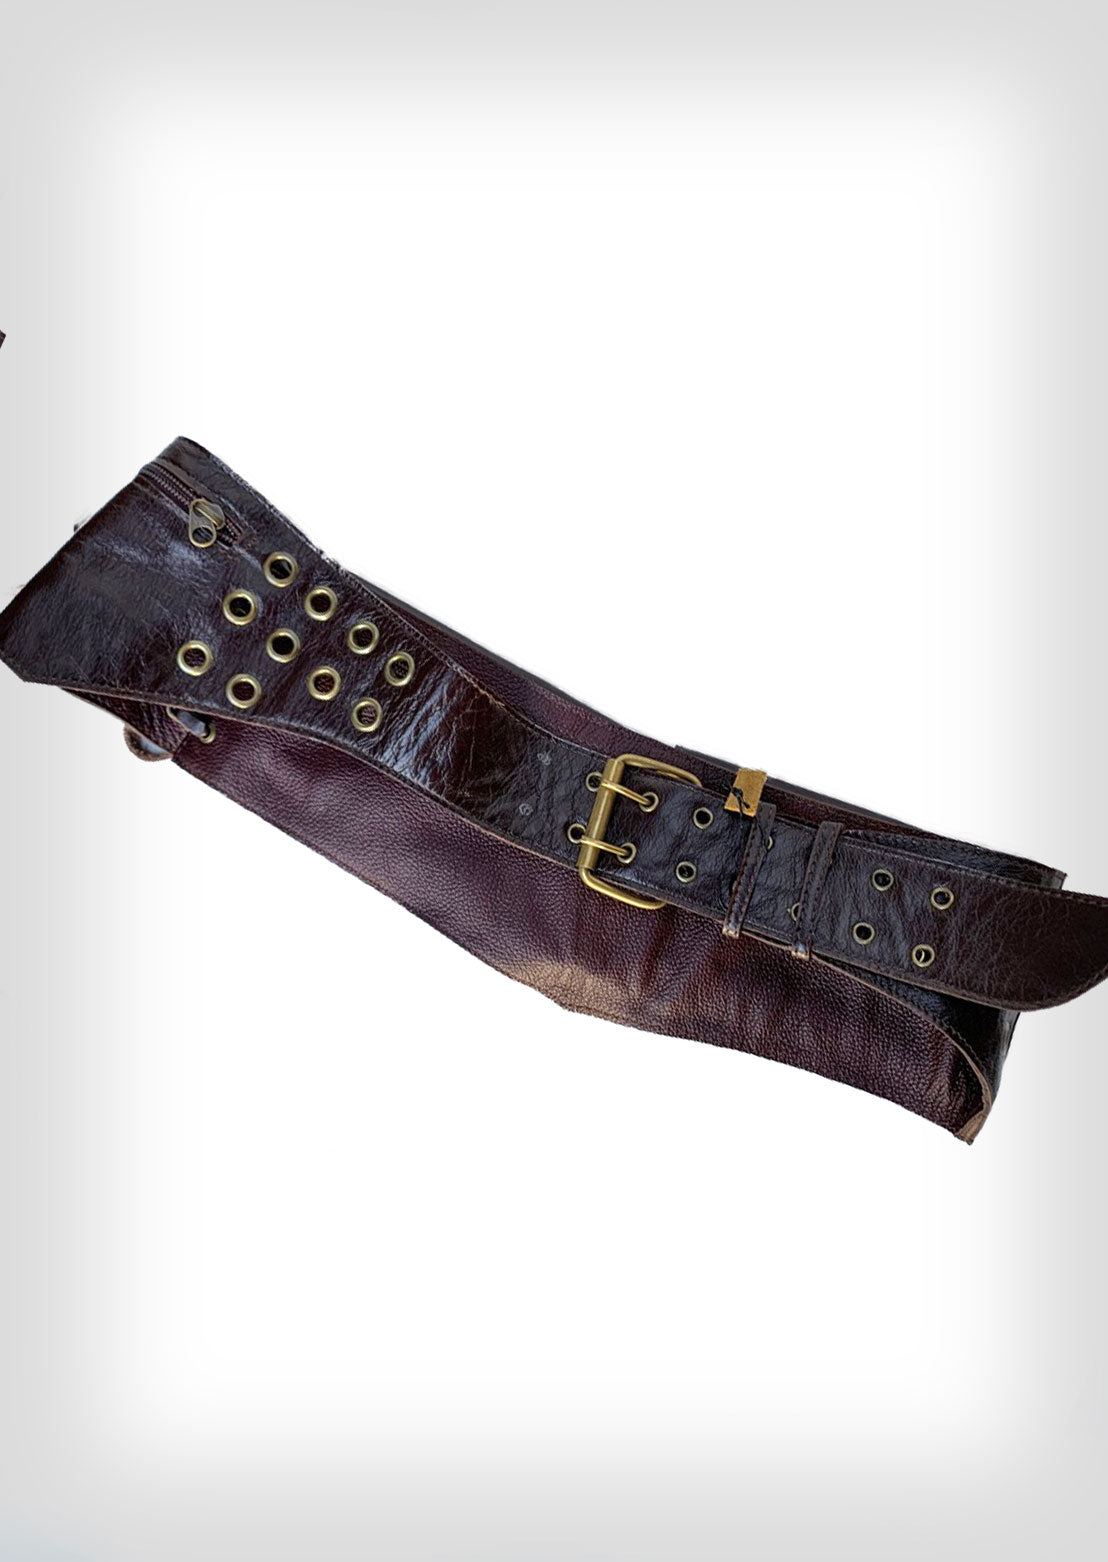 Aligned leather pocket belt